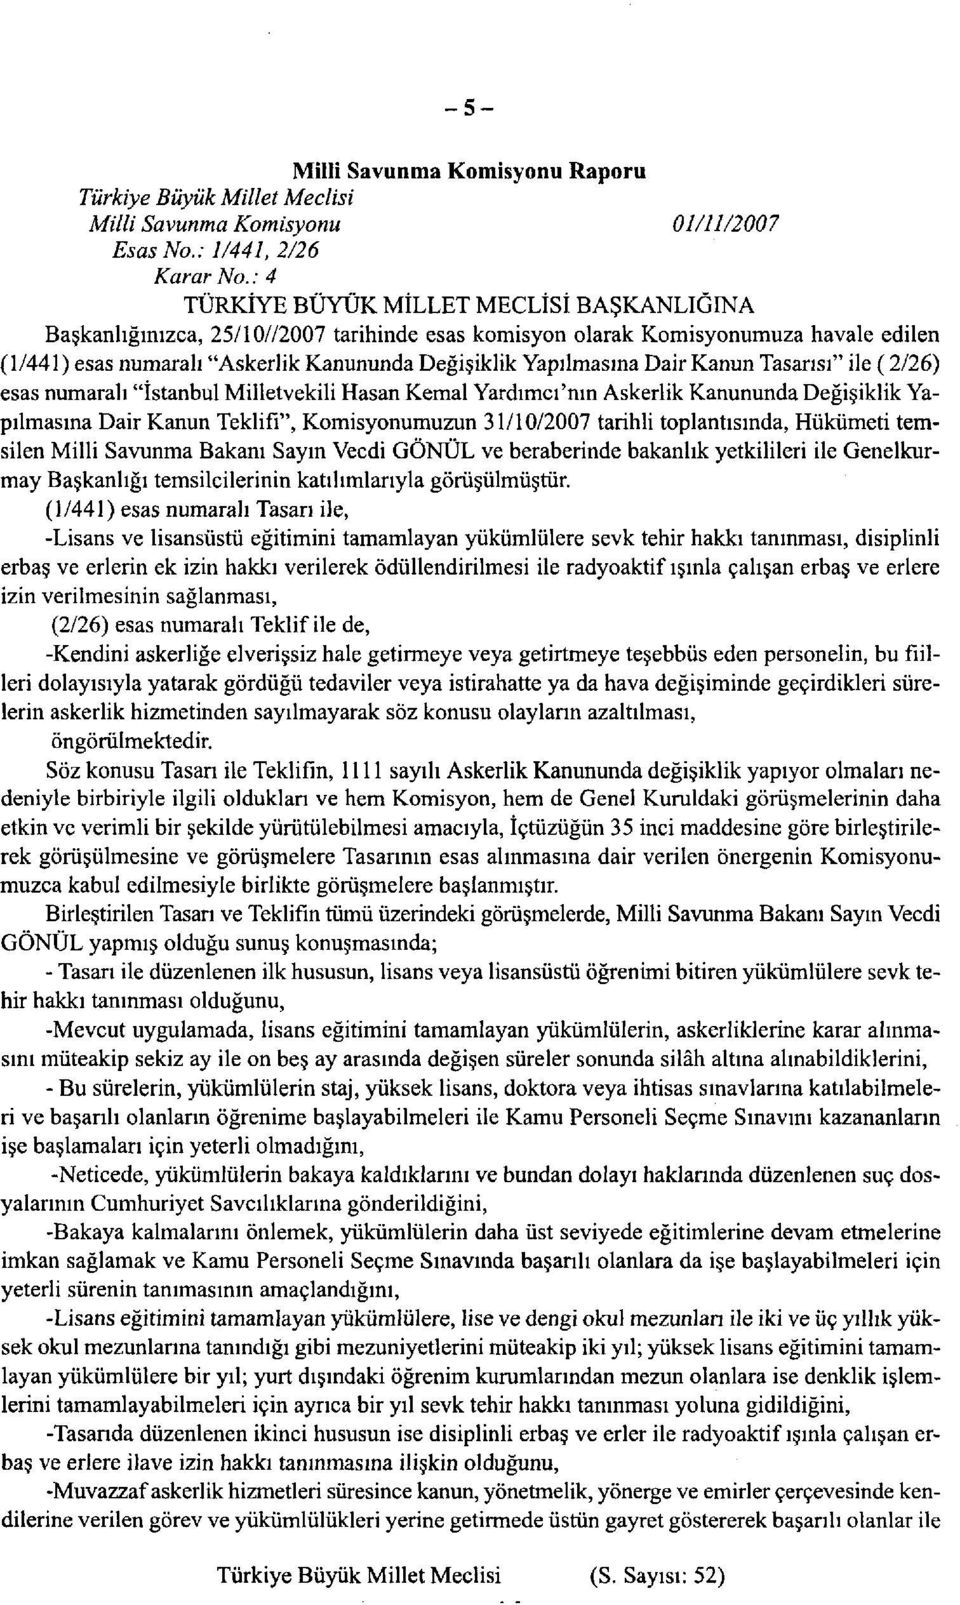 Dair Kanun Tasarısı" ile (2/26) esas numaralı "İstanbul Milletvekili Hasan Kemal Yardımcı'nın Askerlik Kanununda Değişiklik Yapılmasına Dair Kanun Teklifi", Komisyonumuzun 31/10/2007 tarihli